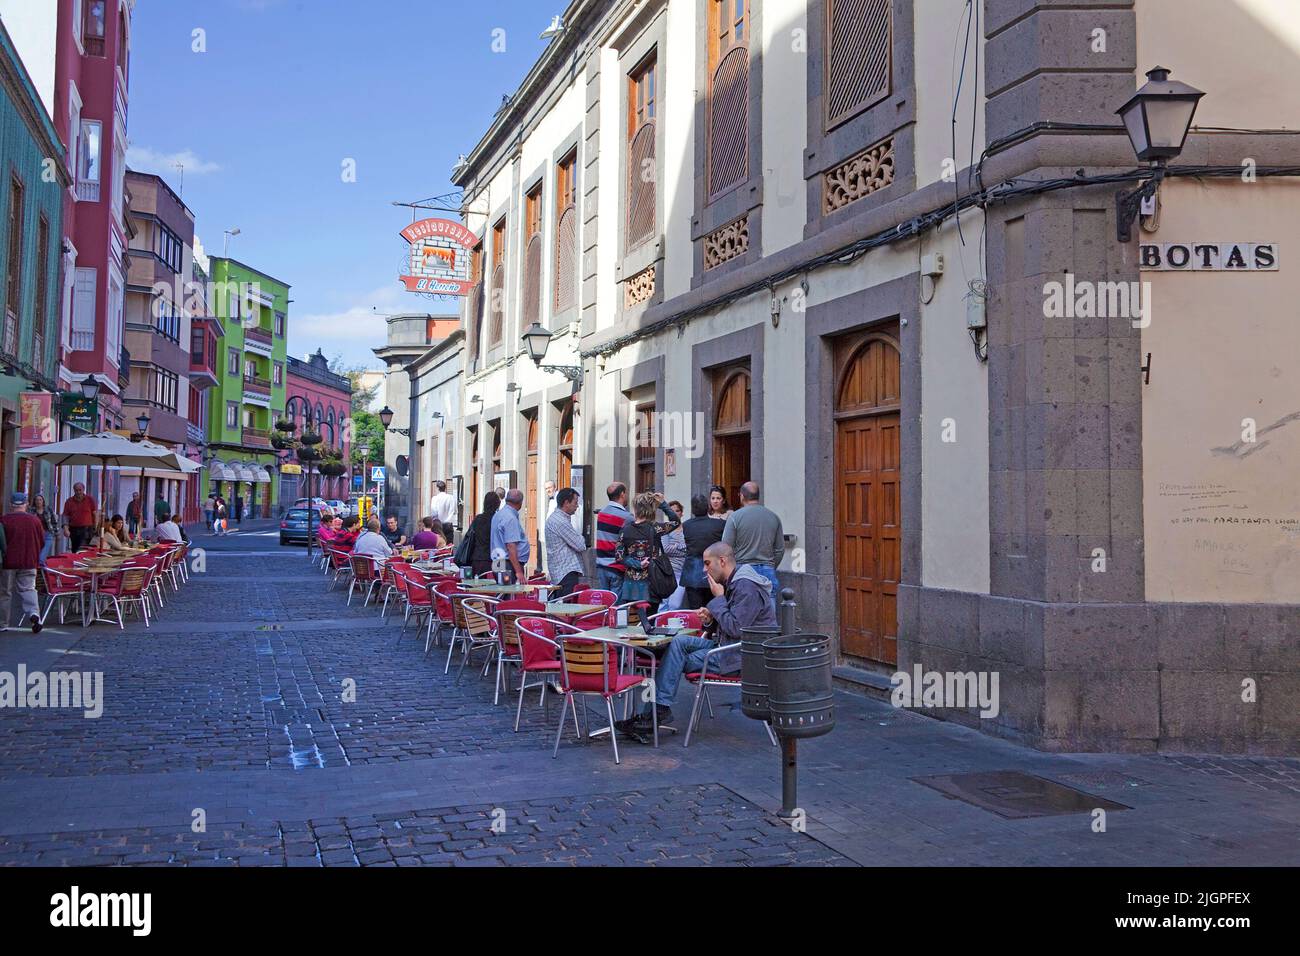 Straßencafe und Restaurants in einer Gasse, Altstadt Vegueta, Las Palmas, Kanarische Inseln, Spanien, Europa Stockfoto